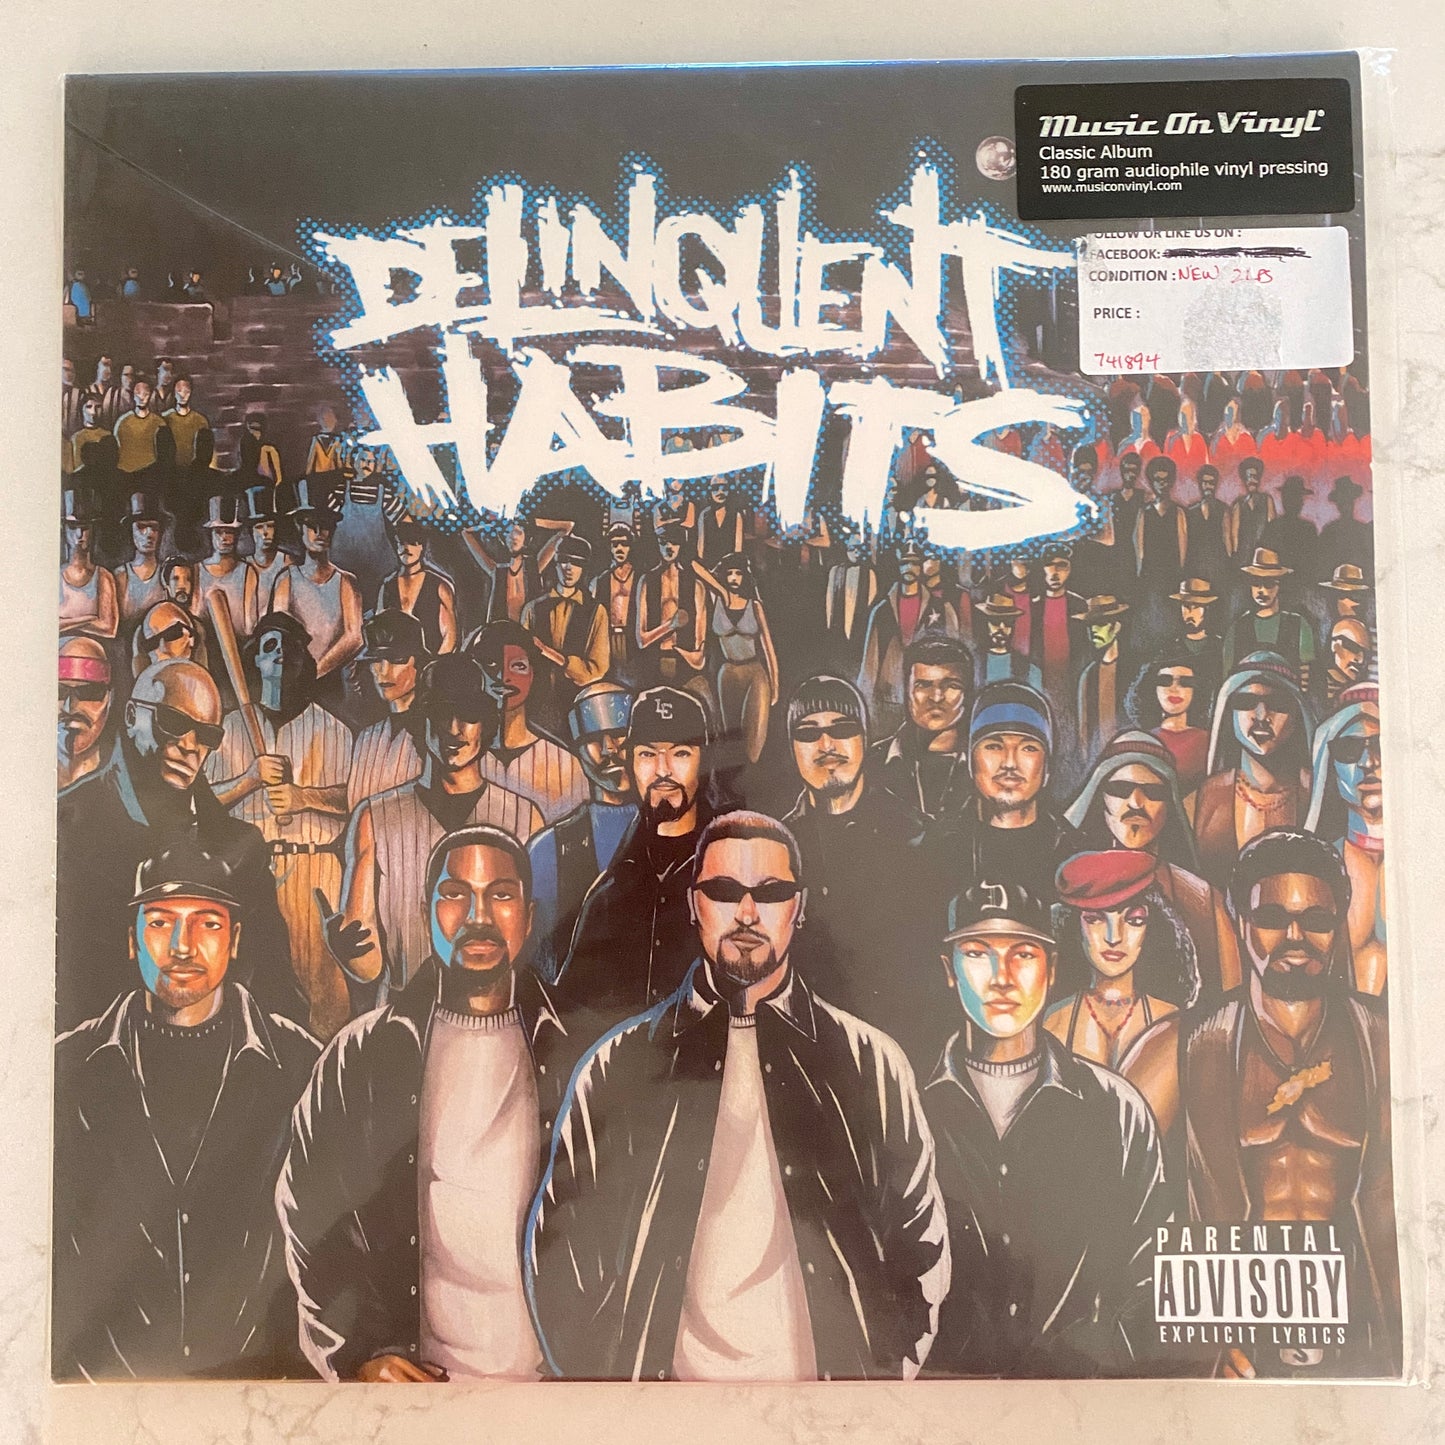 Delinquent Habits - Delinquent Habits (2xLP, Album, RE, 180). SEALED! HIP-HOP